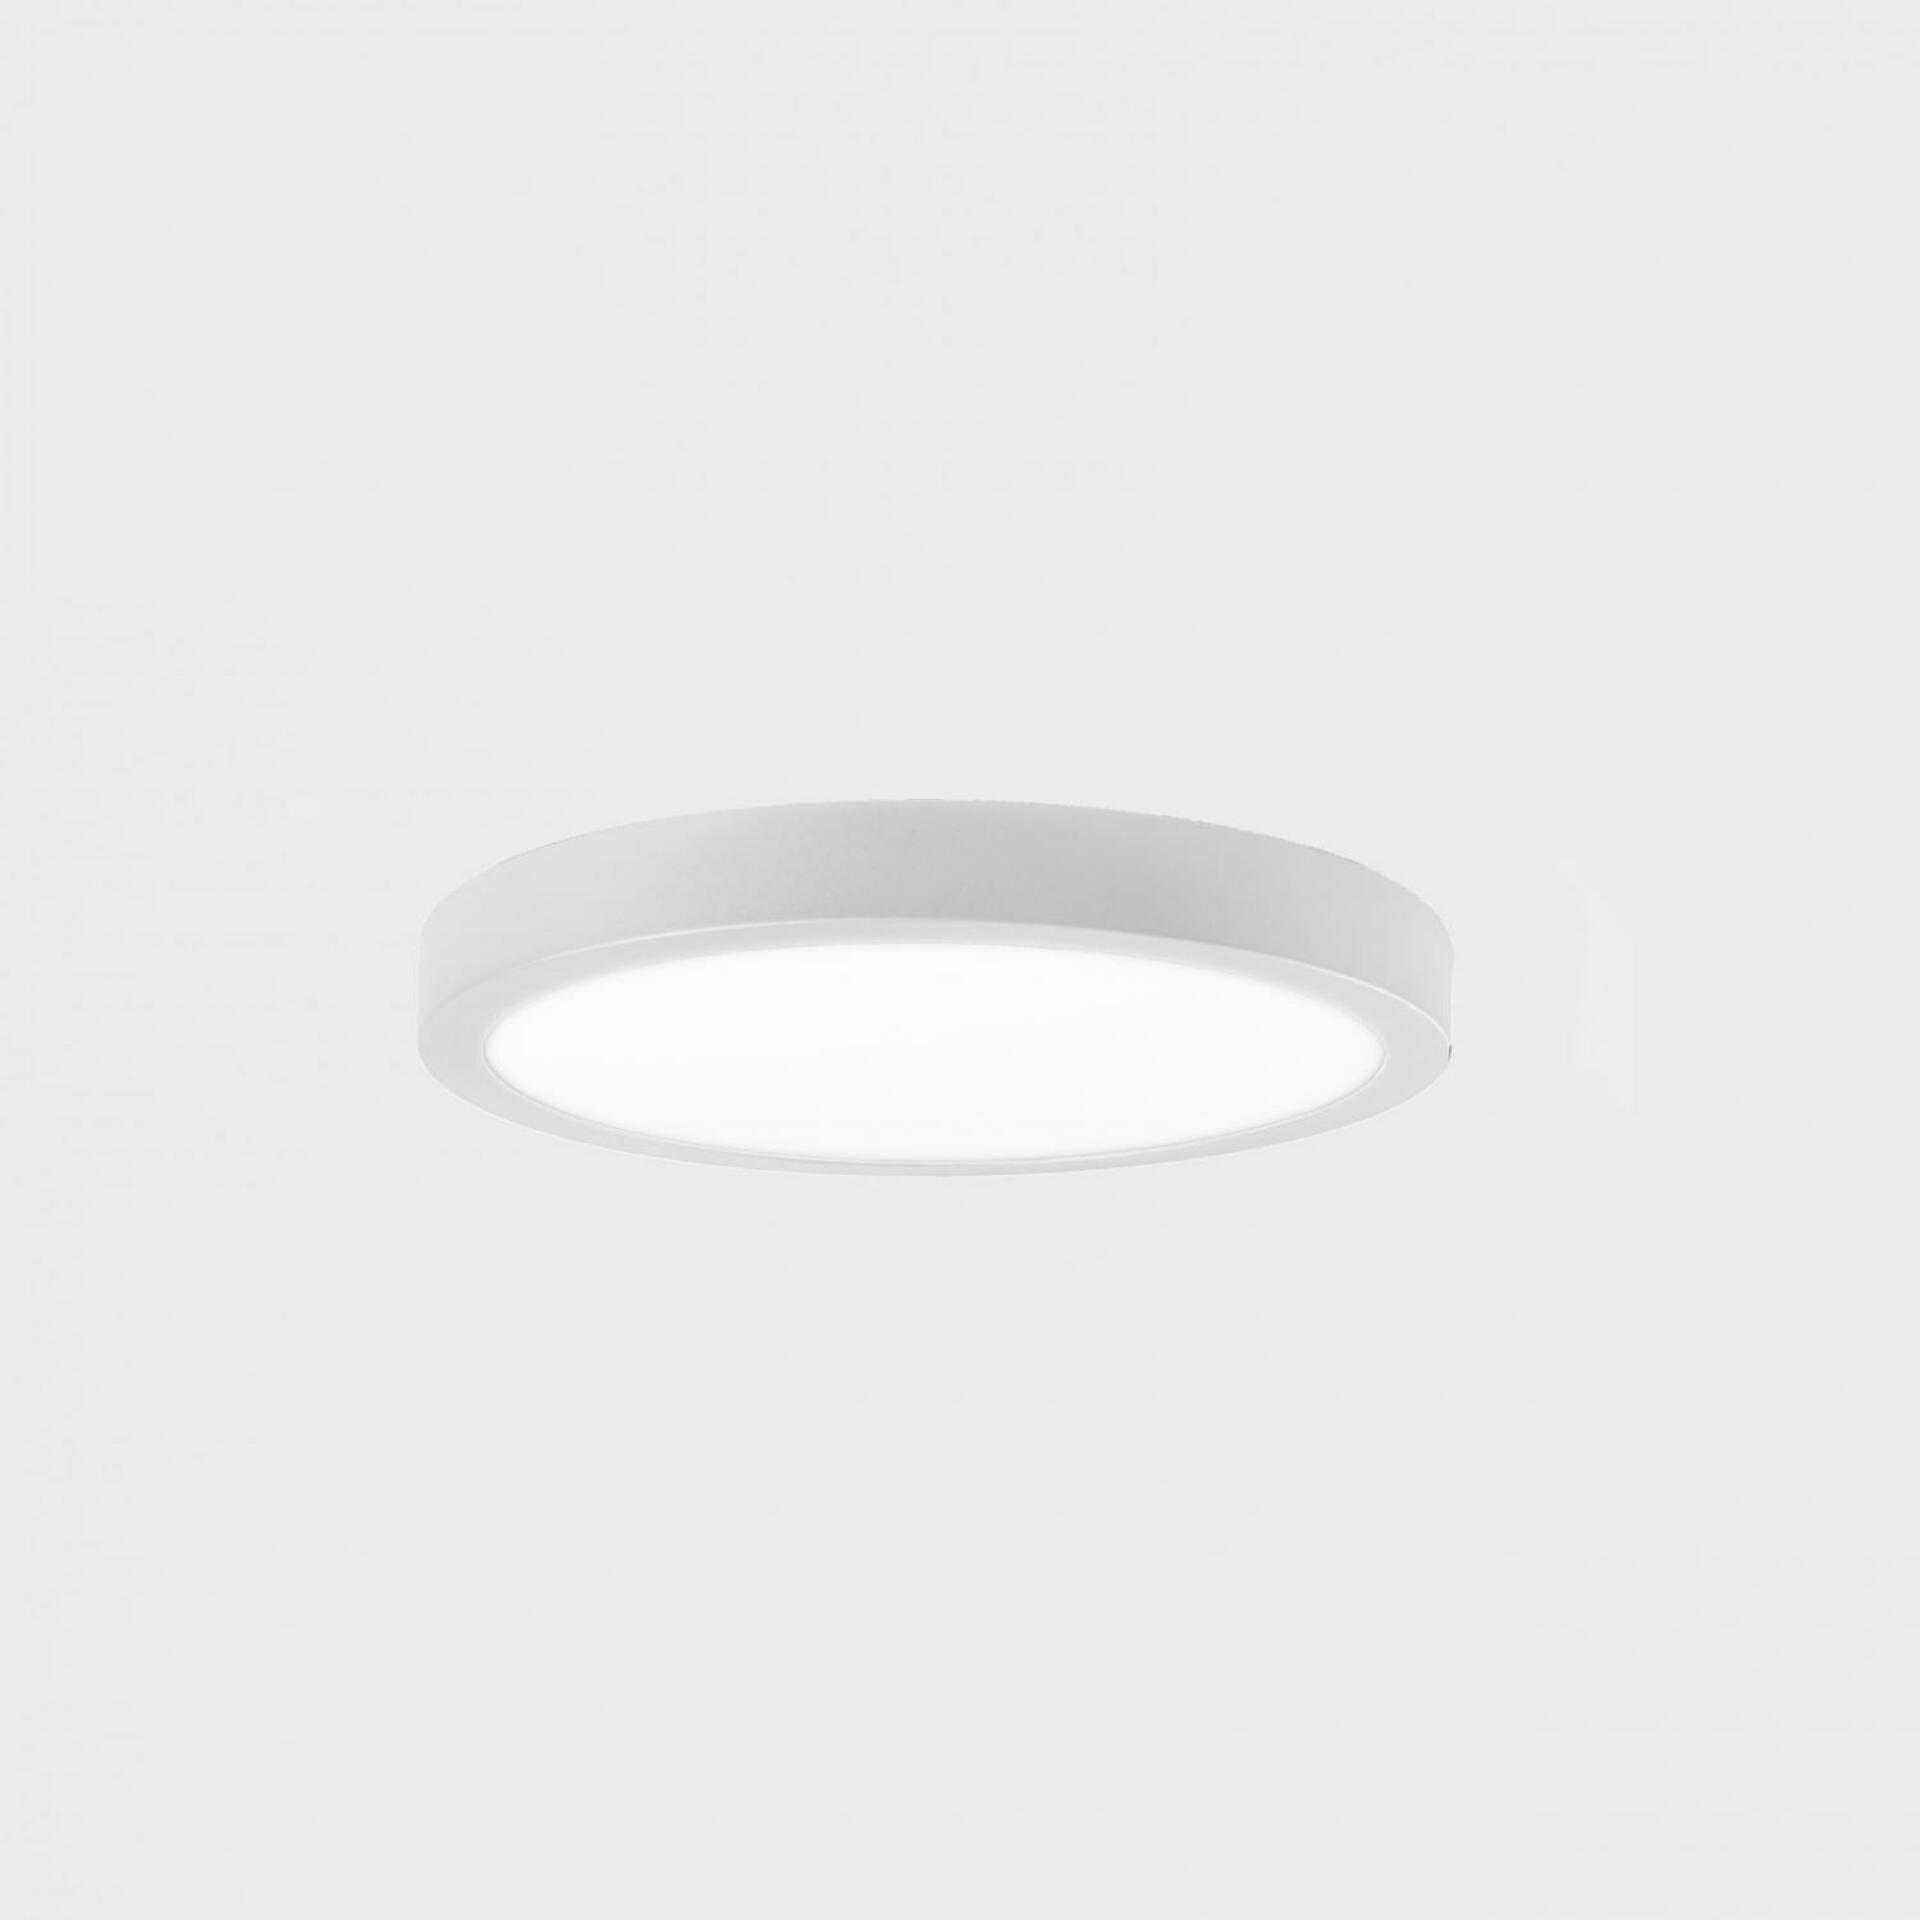 KOHL LIGHTING KOHL-Lighting DISC SLIM stropní svítidlo pr. 225 mm bílá 24 W CRI 80 3000K Non-Dimm